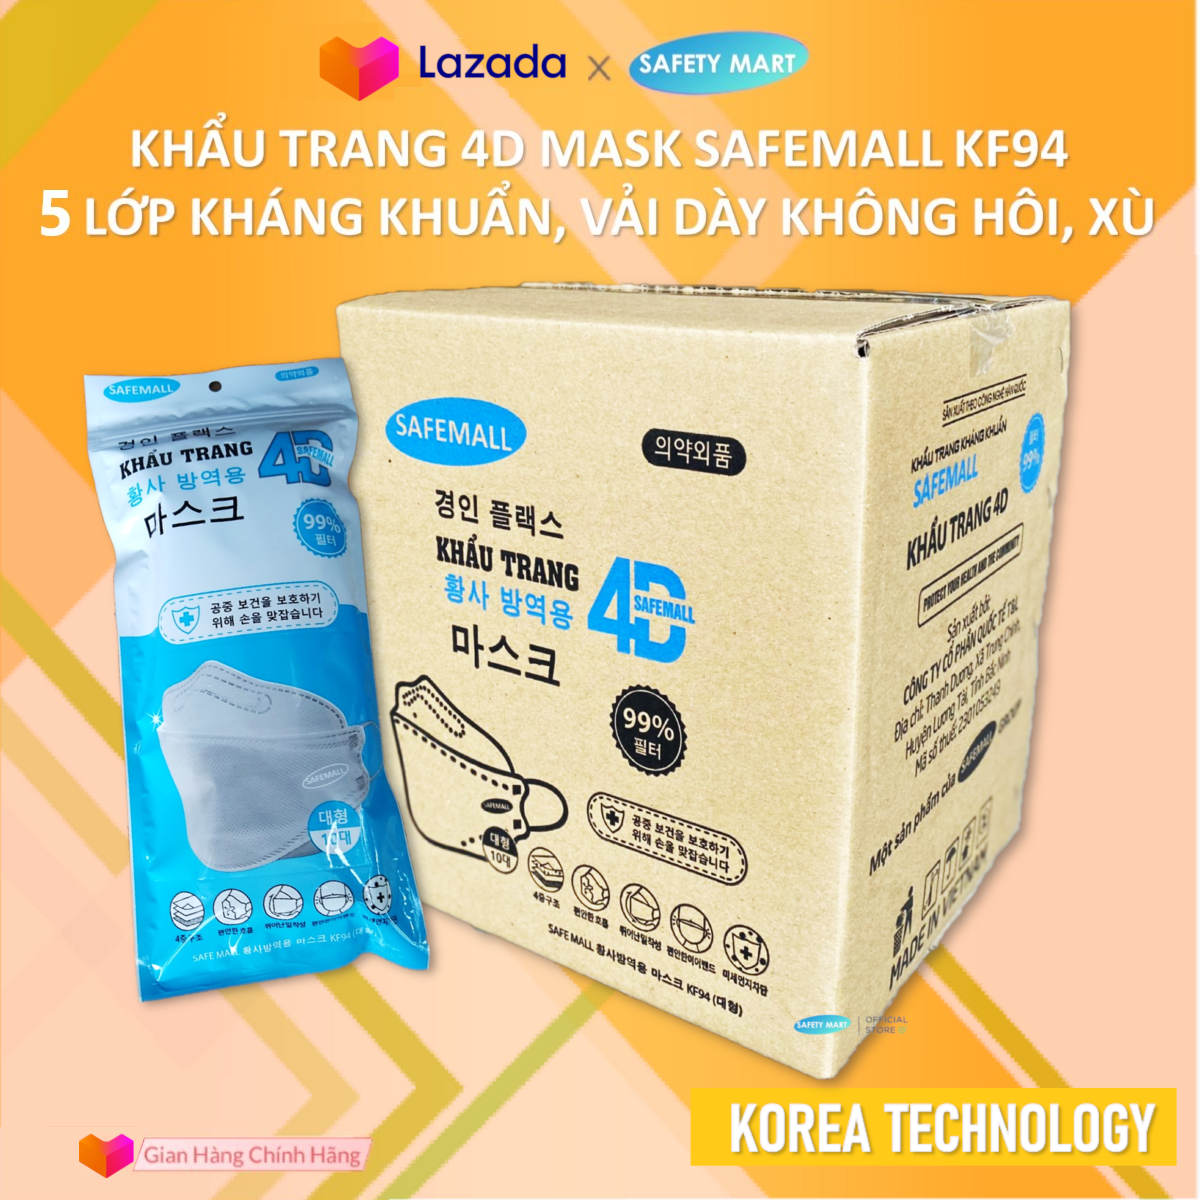 [CHÍNH HÃNG] Thùng 300 Khẩu trang y tế KF94 SafeMall 5 lớp lọc Premium N99+ Korea Technology , Thùng 300 chiếc khẩu trang KF94 loại 5 lớp Kháng Khuẩn Kháng Bụi Mịn lên đến 99% - Hàng Chính Hãng Safety Mart Official